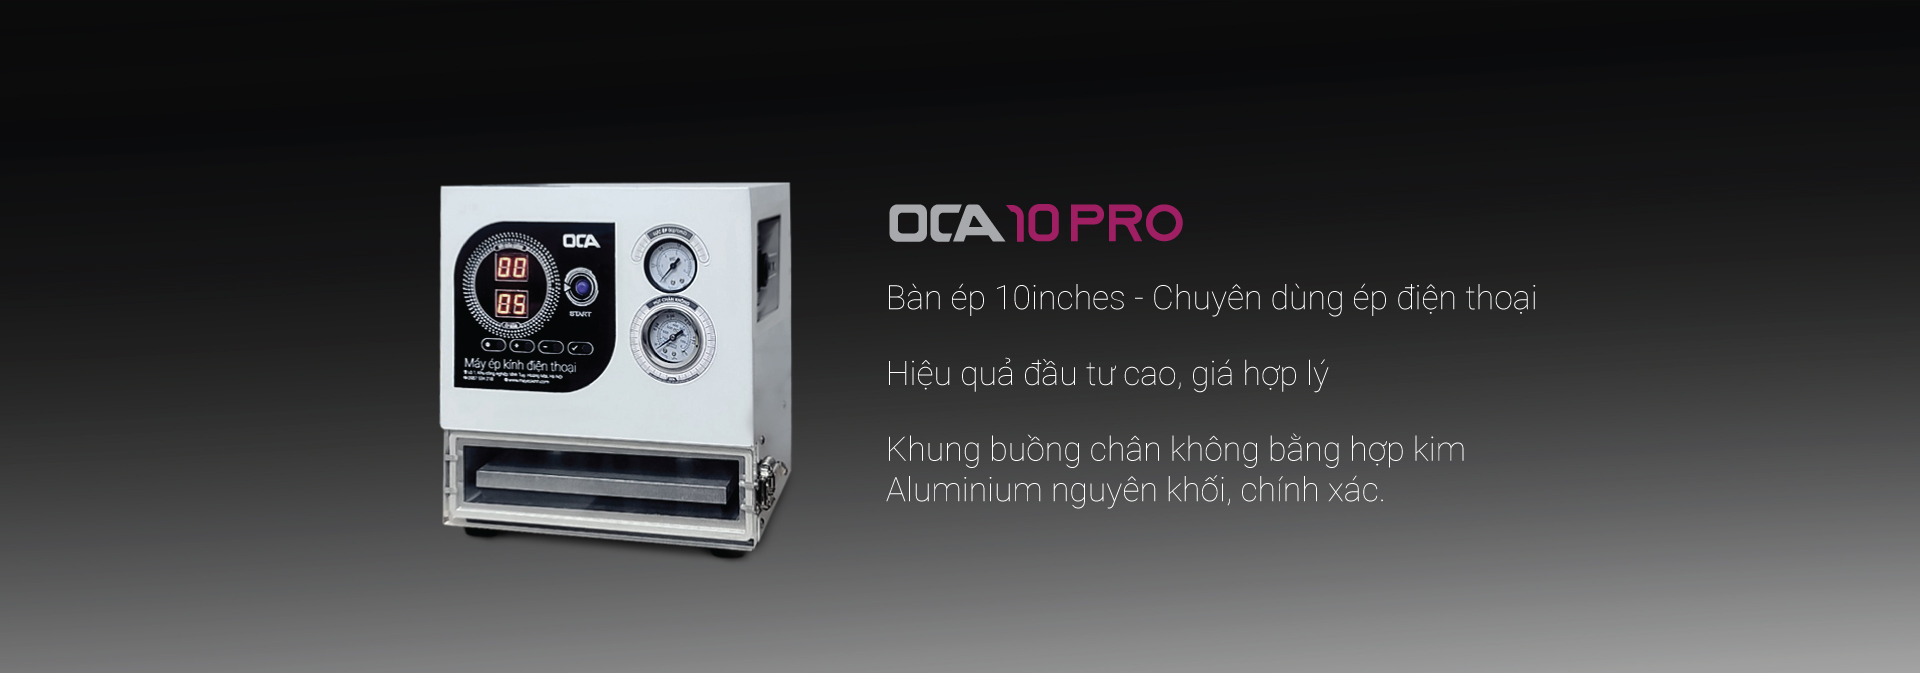 Máy ép kính điện thoại OCA 10 Pro